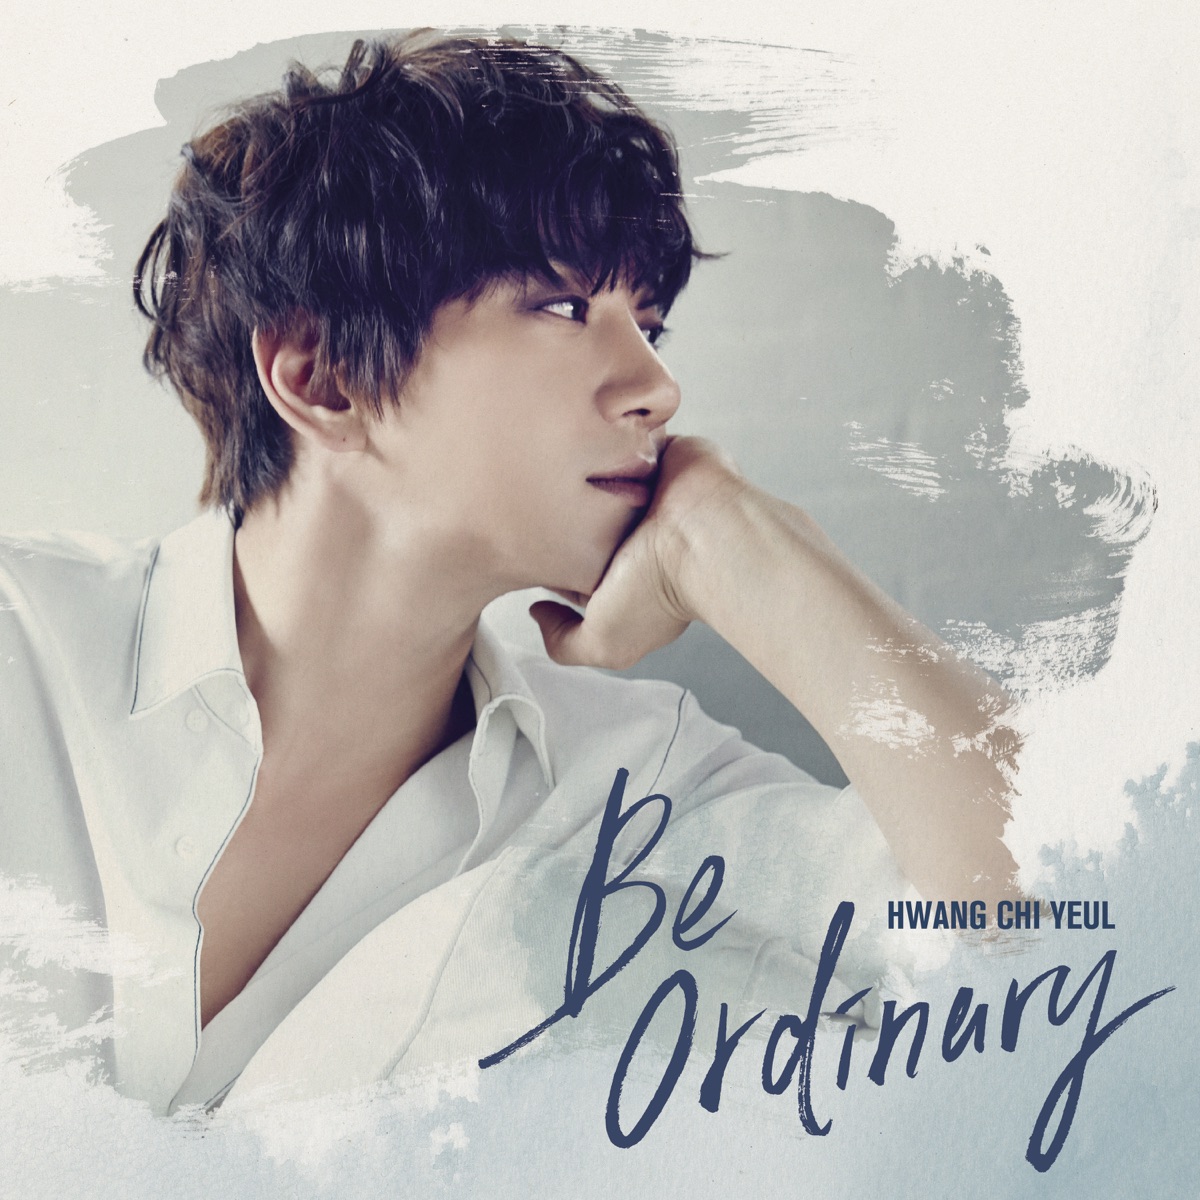 HWANG CHI YEUL – Be ordinary – EP